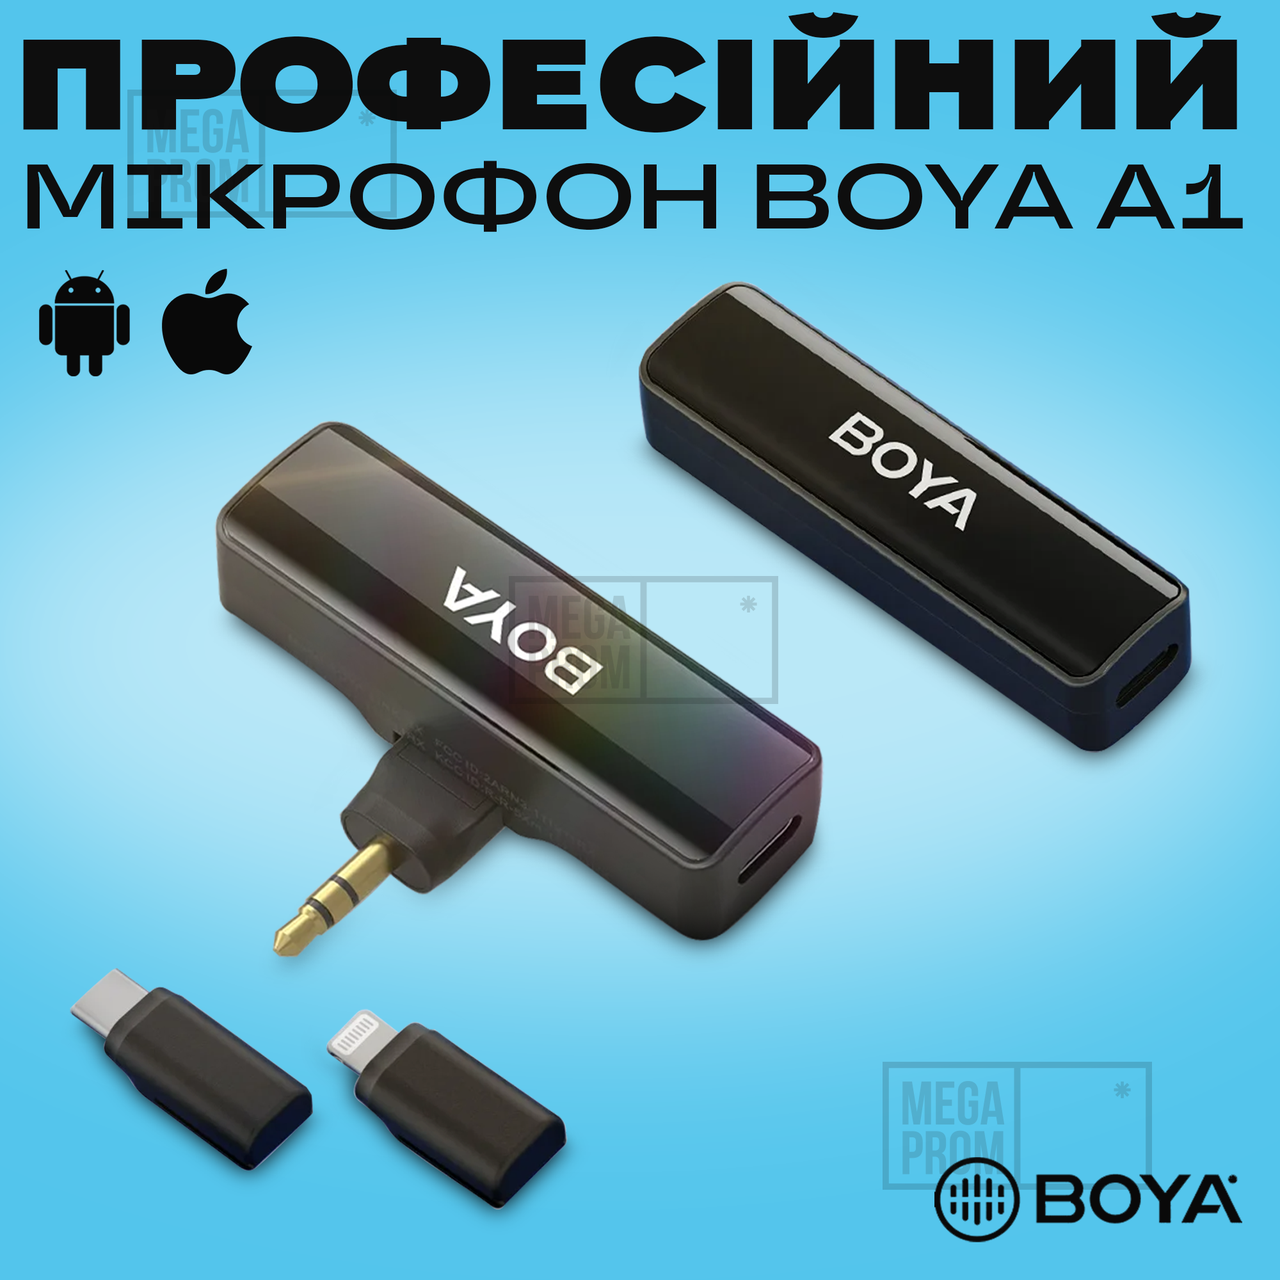 Професійний мікрофон Boya A1 з перехідниками Type-c lightning 3.5mm для запису петличка для айфона iphone